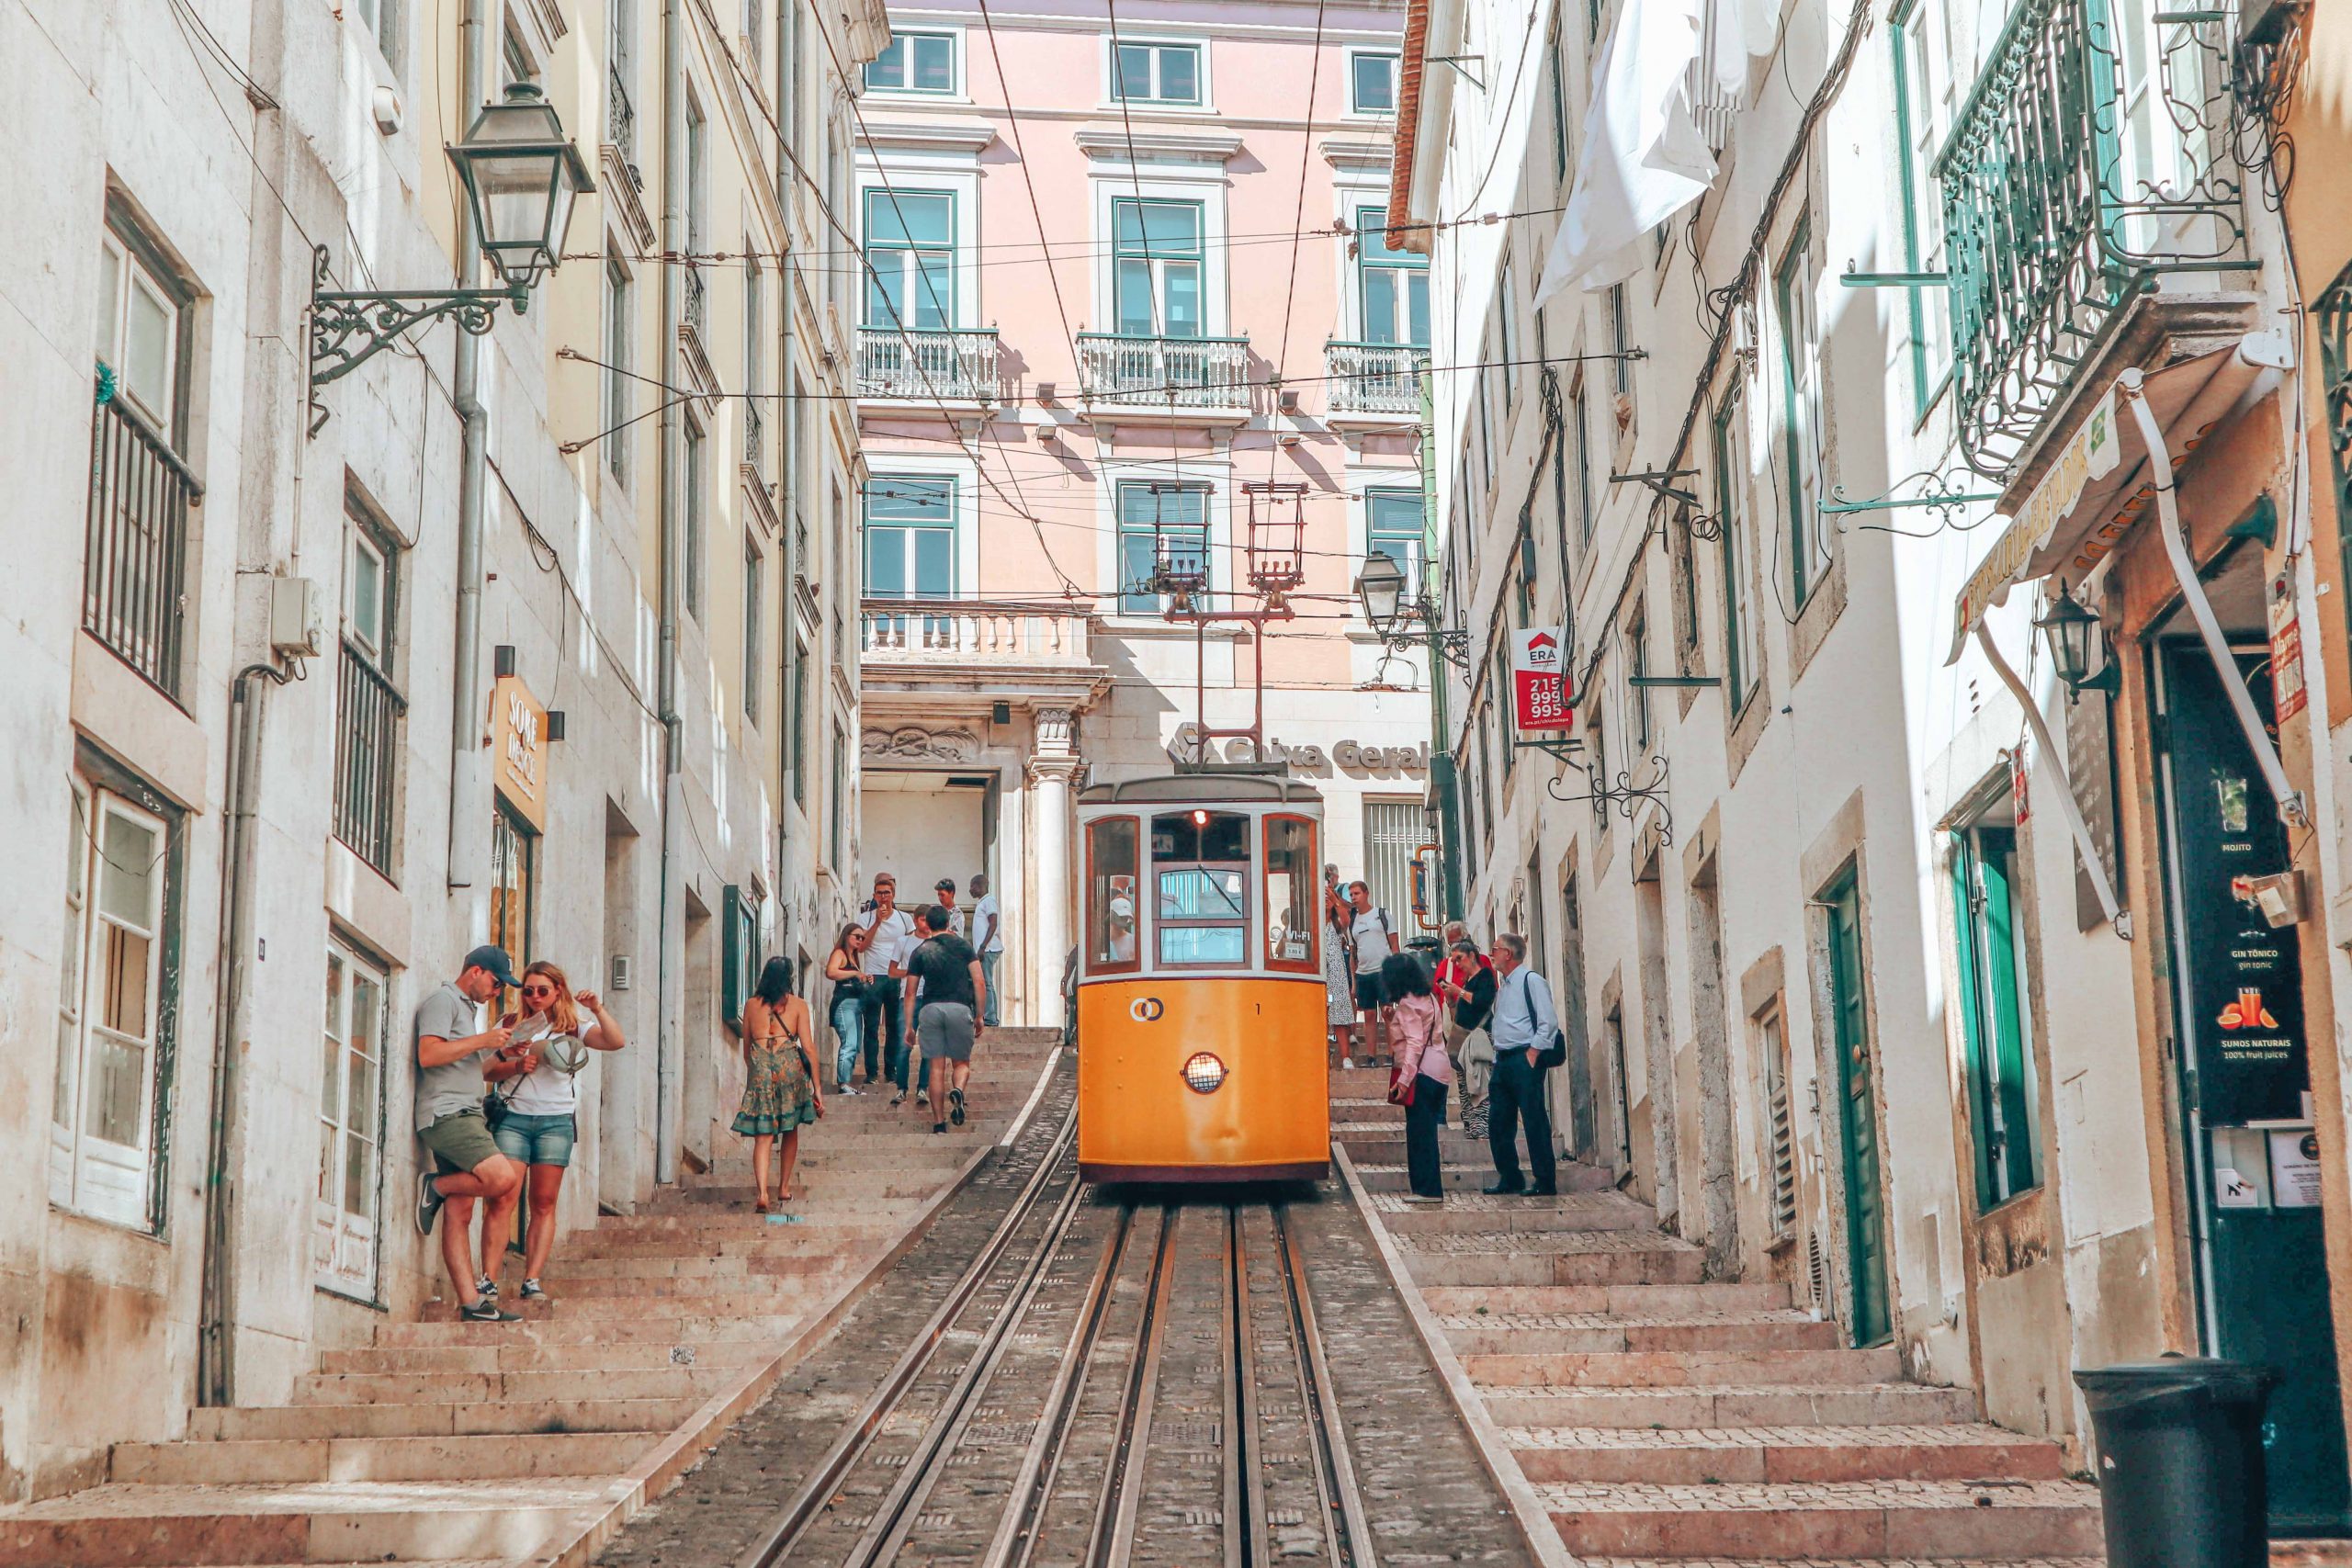 Best brunch spots in Lisbon